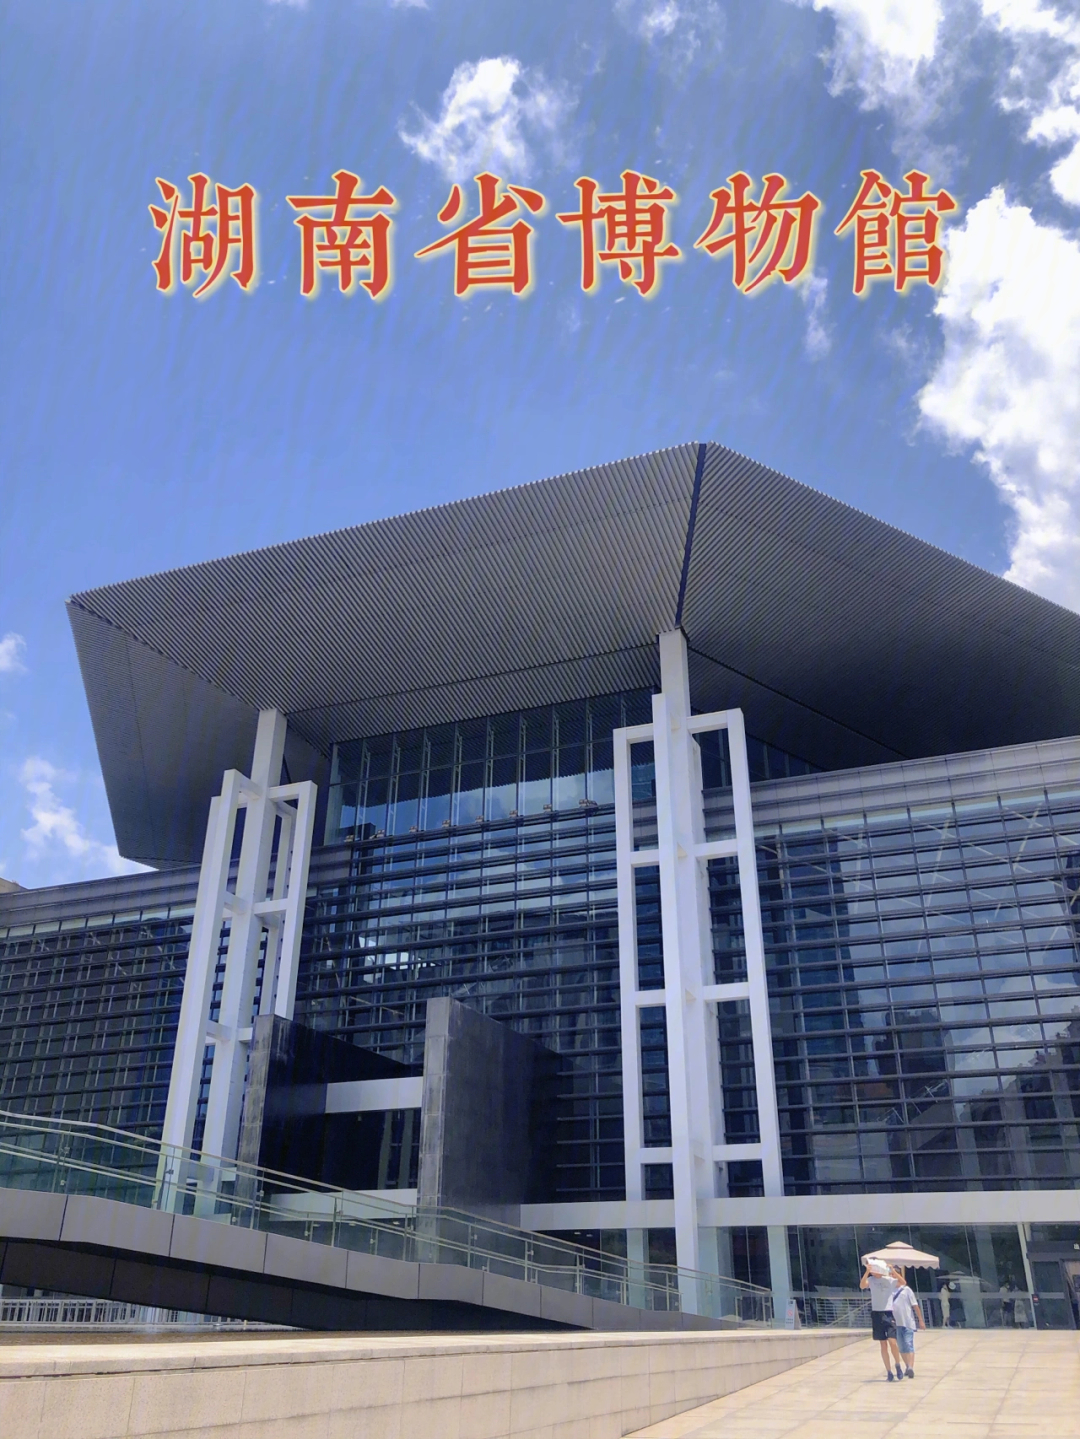 湖南省博物馆标识牌图片